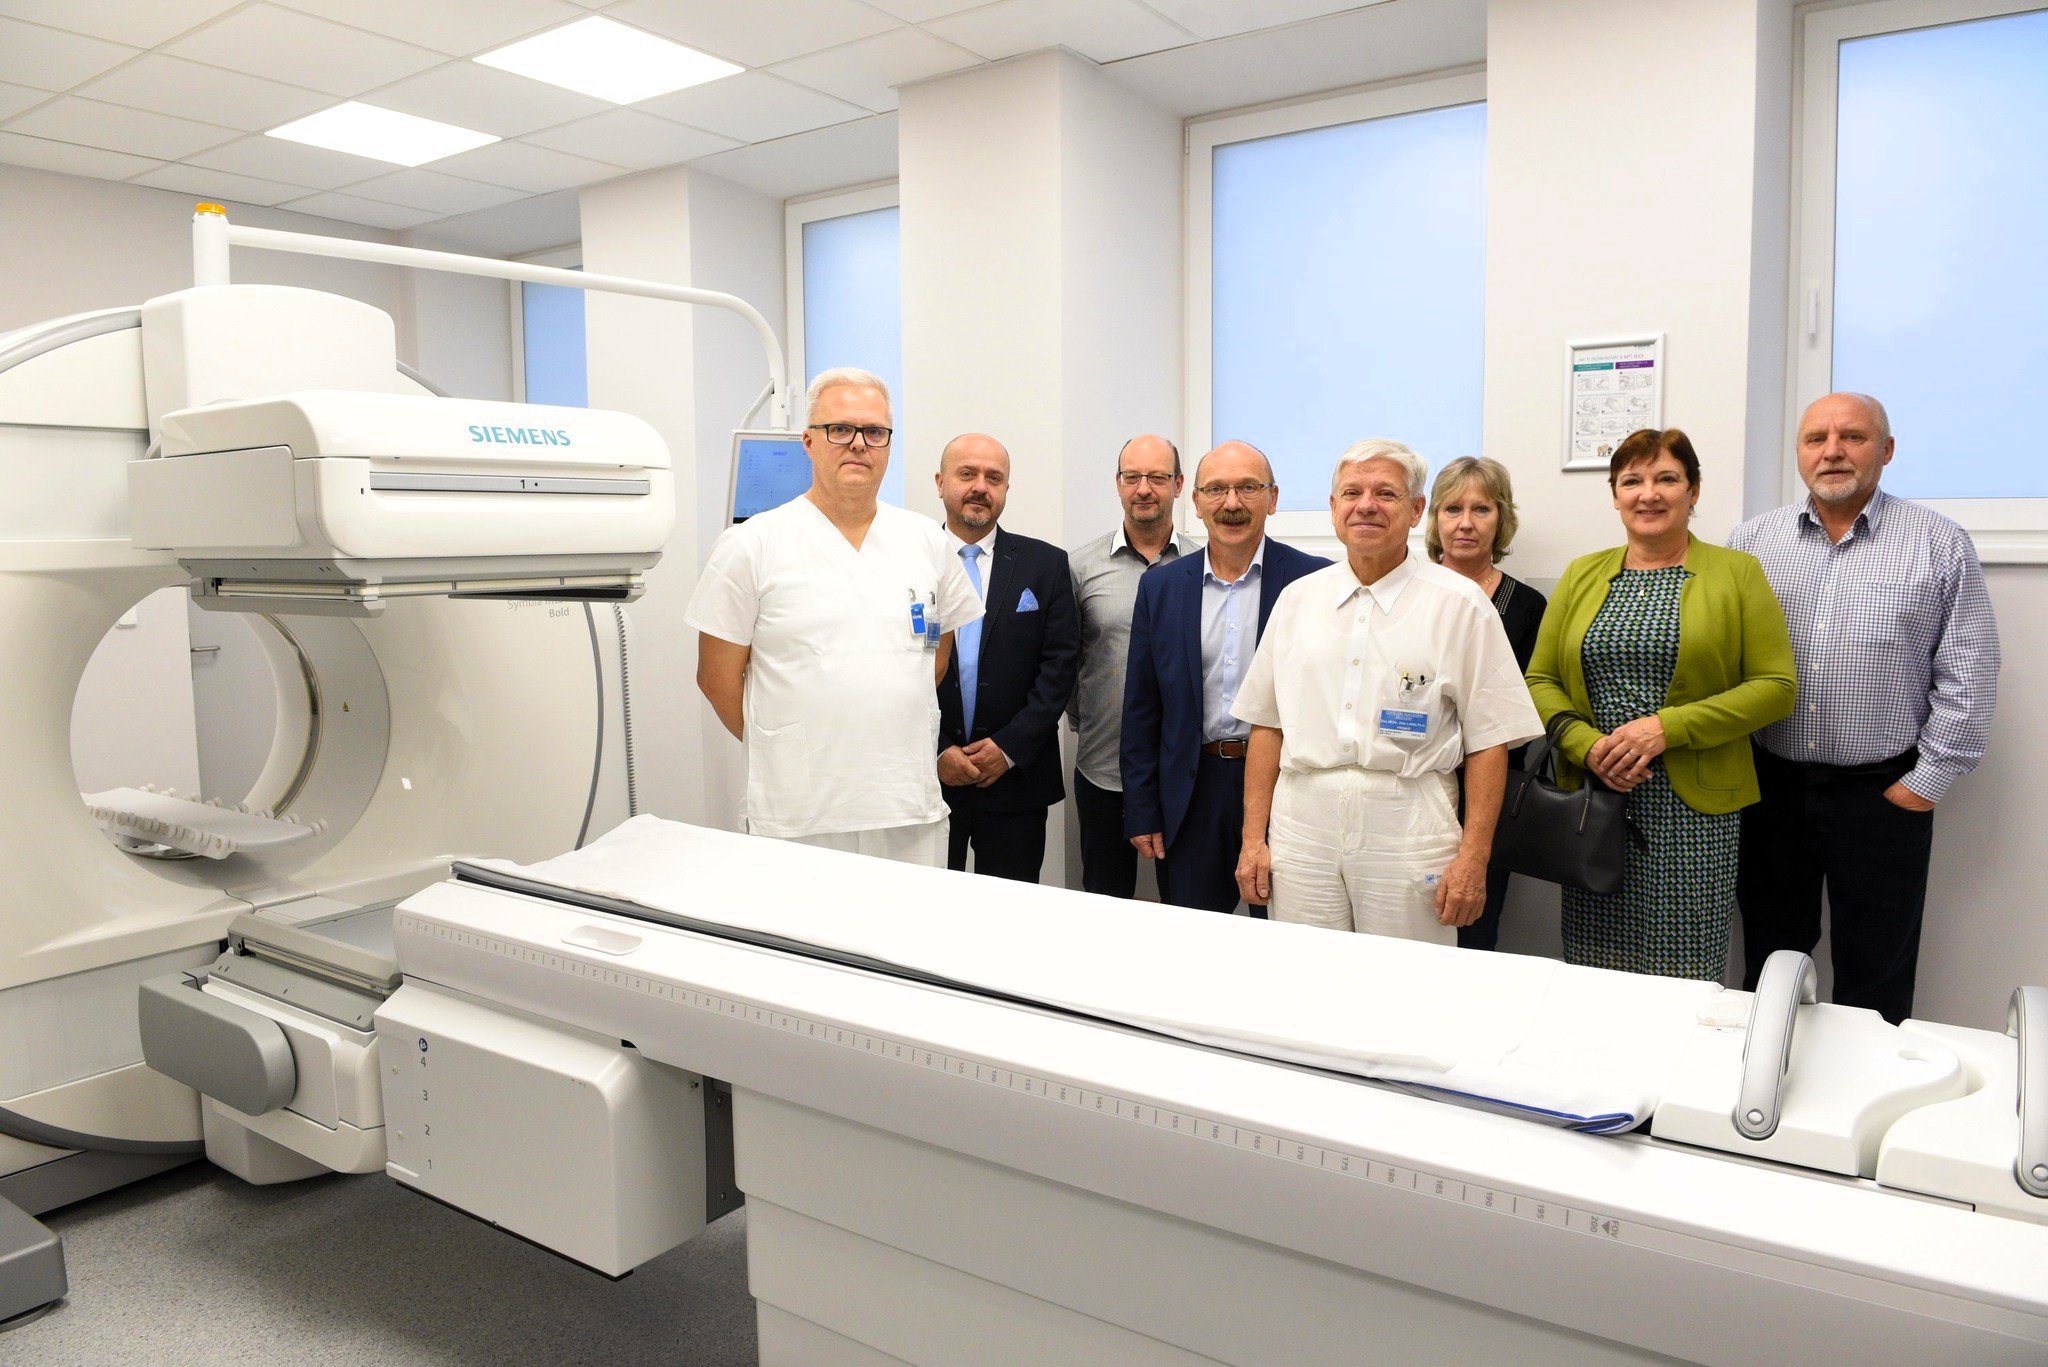 Příbramská nemocnice uvedla do provozu nové kamery pro nukleární medicínu za více než 55 milionů korun